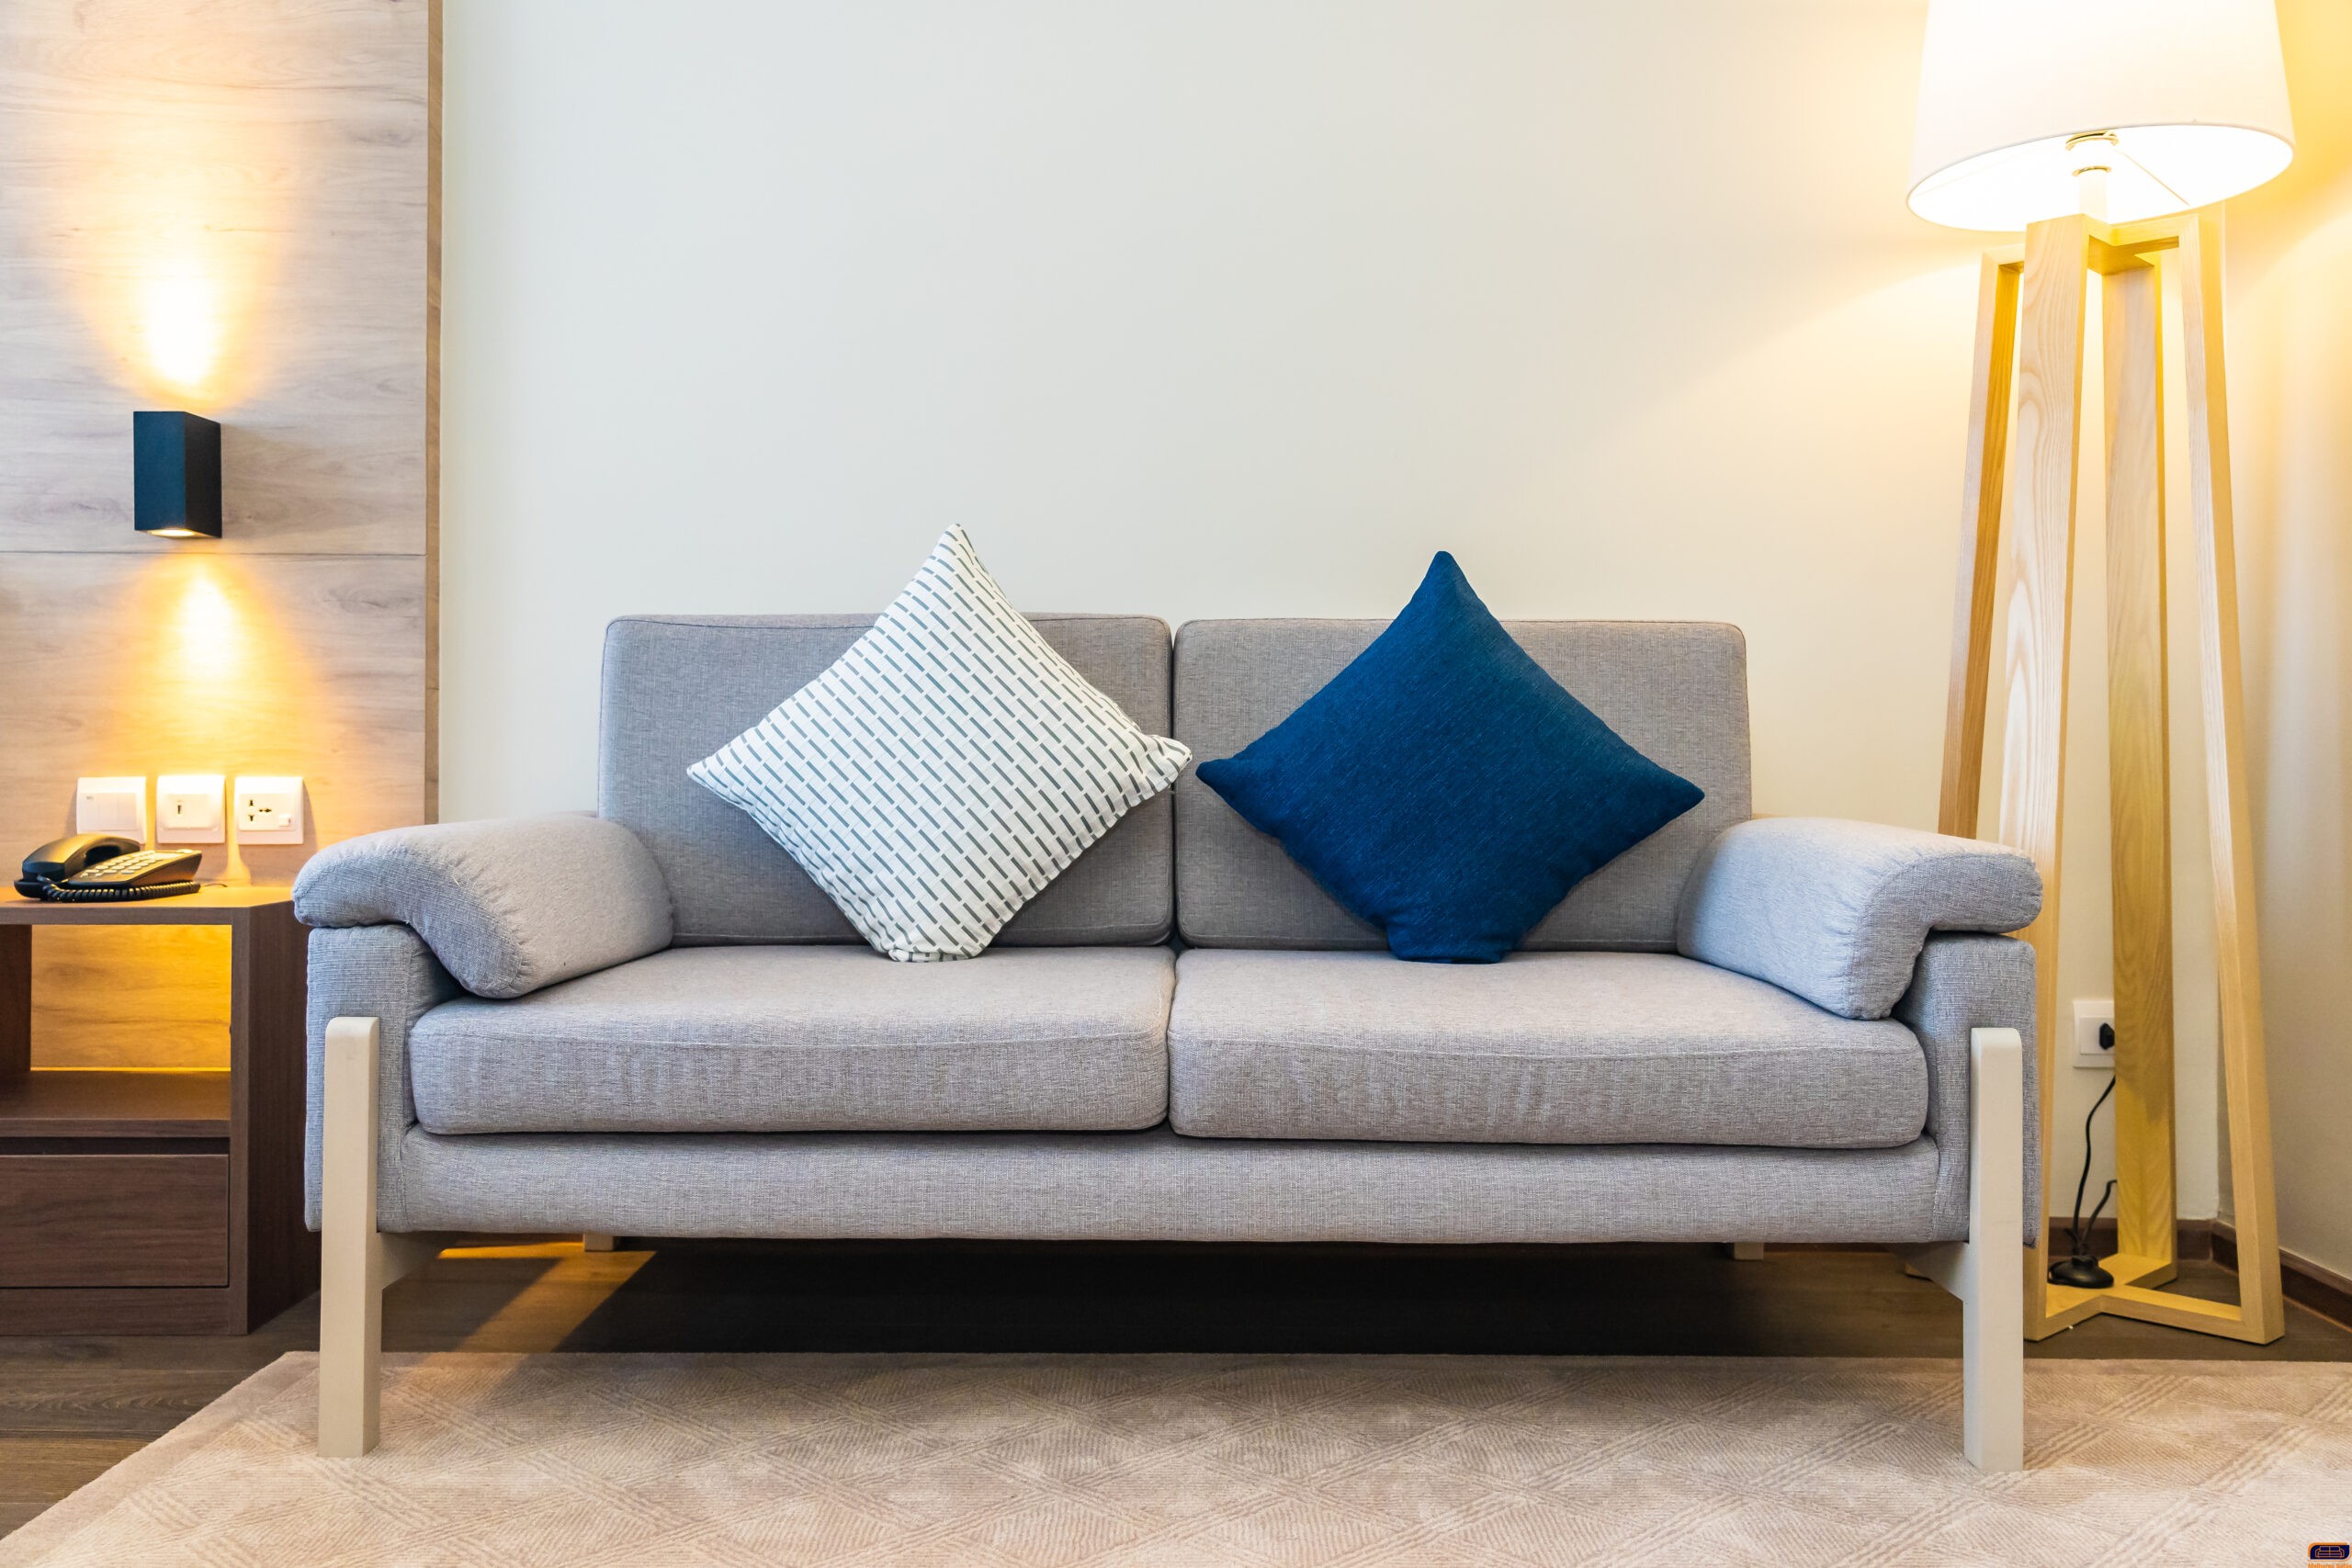 Melhor sofá para sala: 4 sugestões para descubrir o modelo ideal